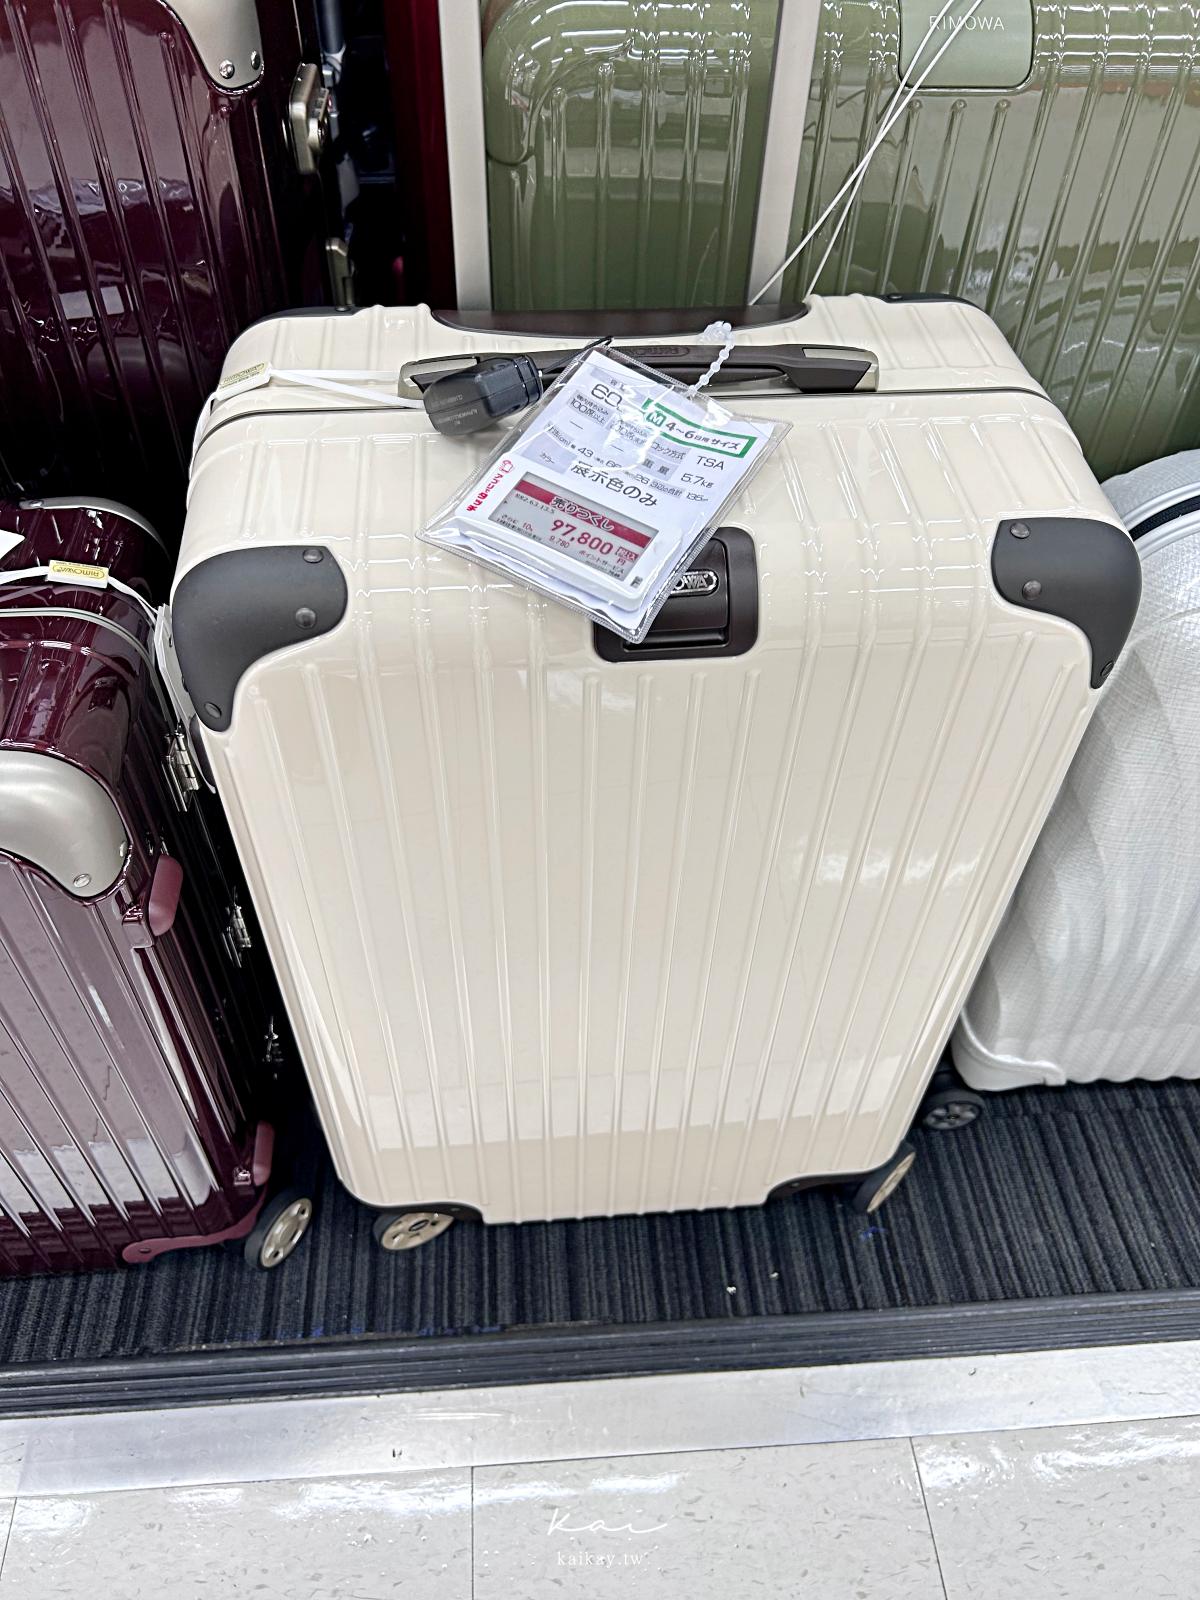 ☆【日本必買】RIMOWA行李箱哪裡買最便宜？款式最齊全？退稅、優惠券全攻略